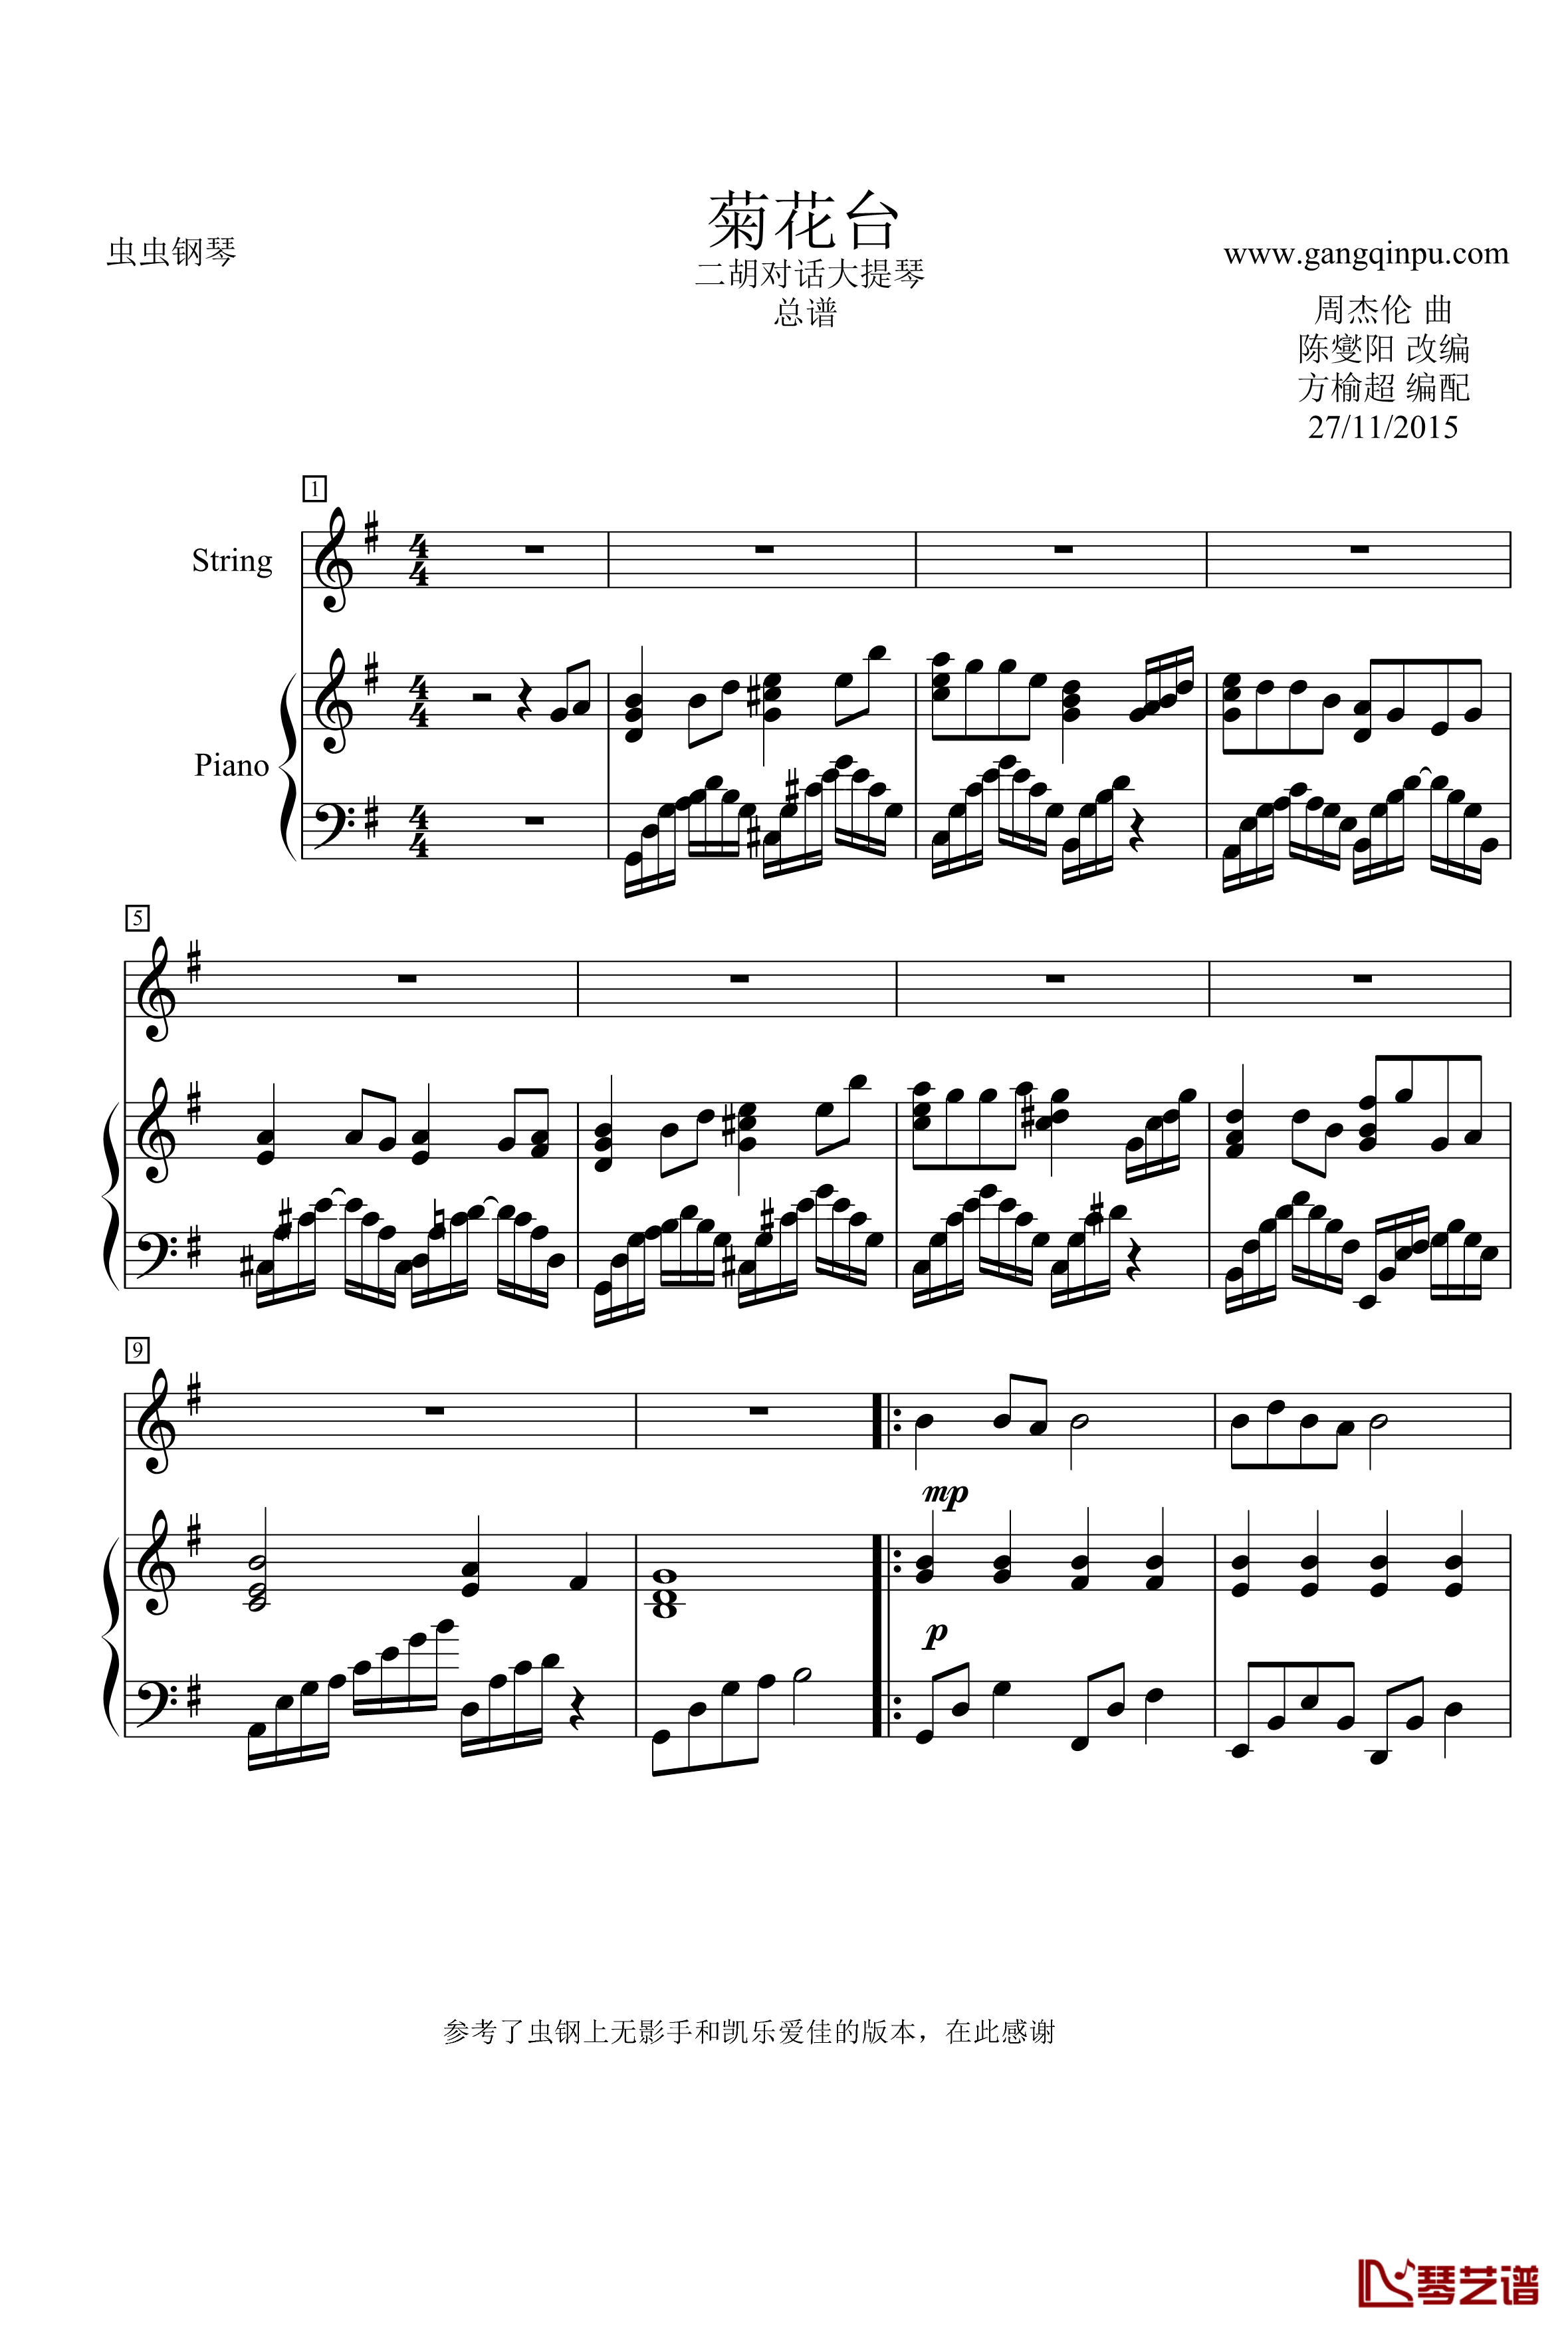 菊花台钢琴谱-二胡对话大提琴 钢琴 总谱-周杰伦1